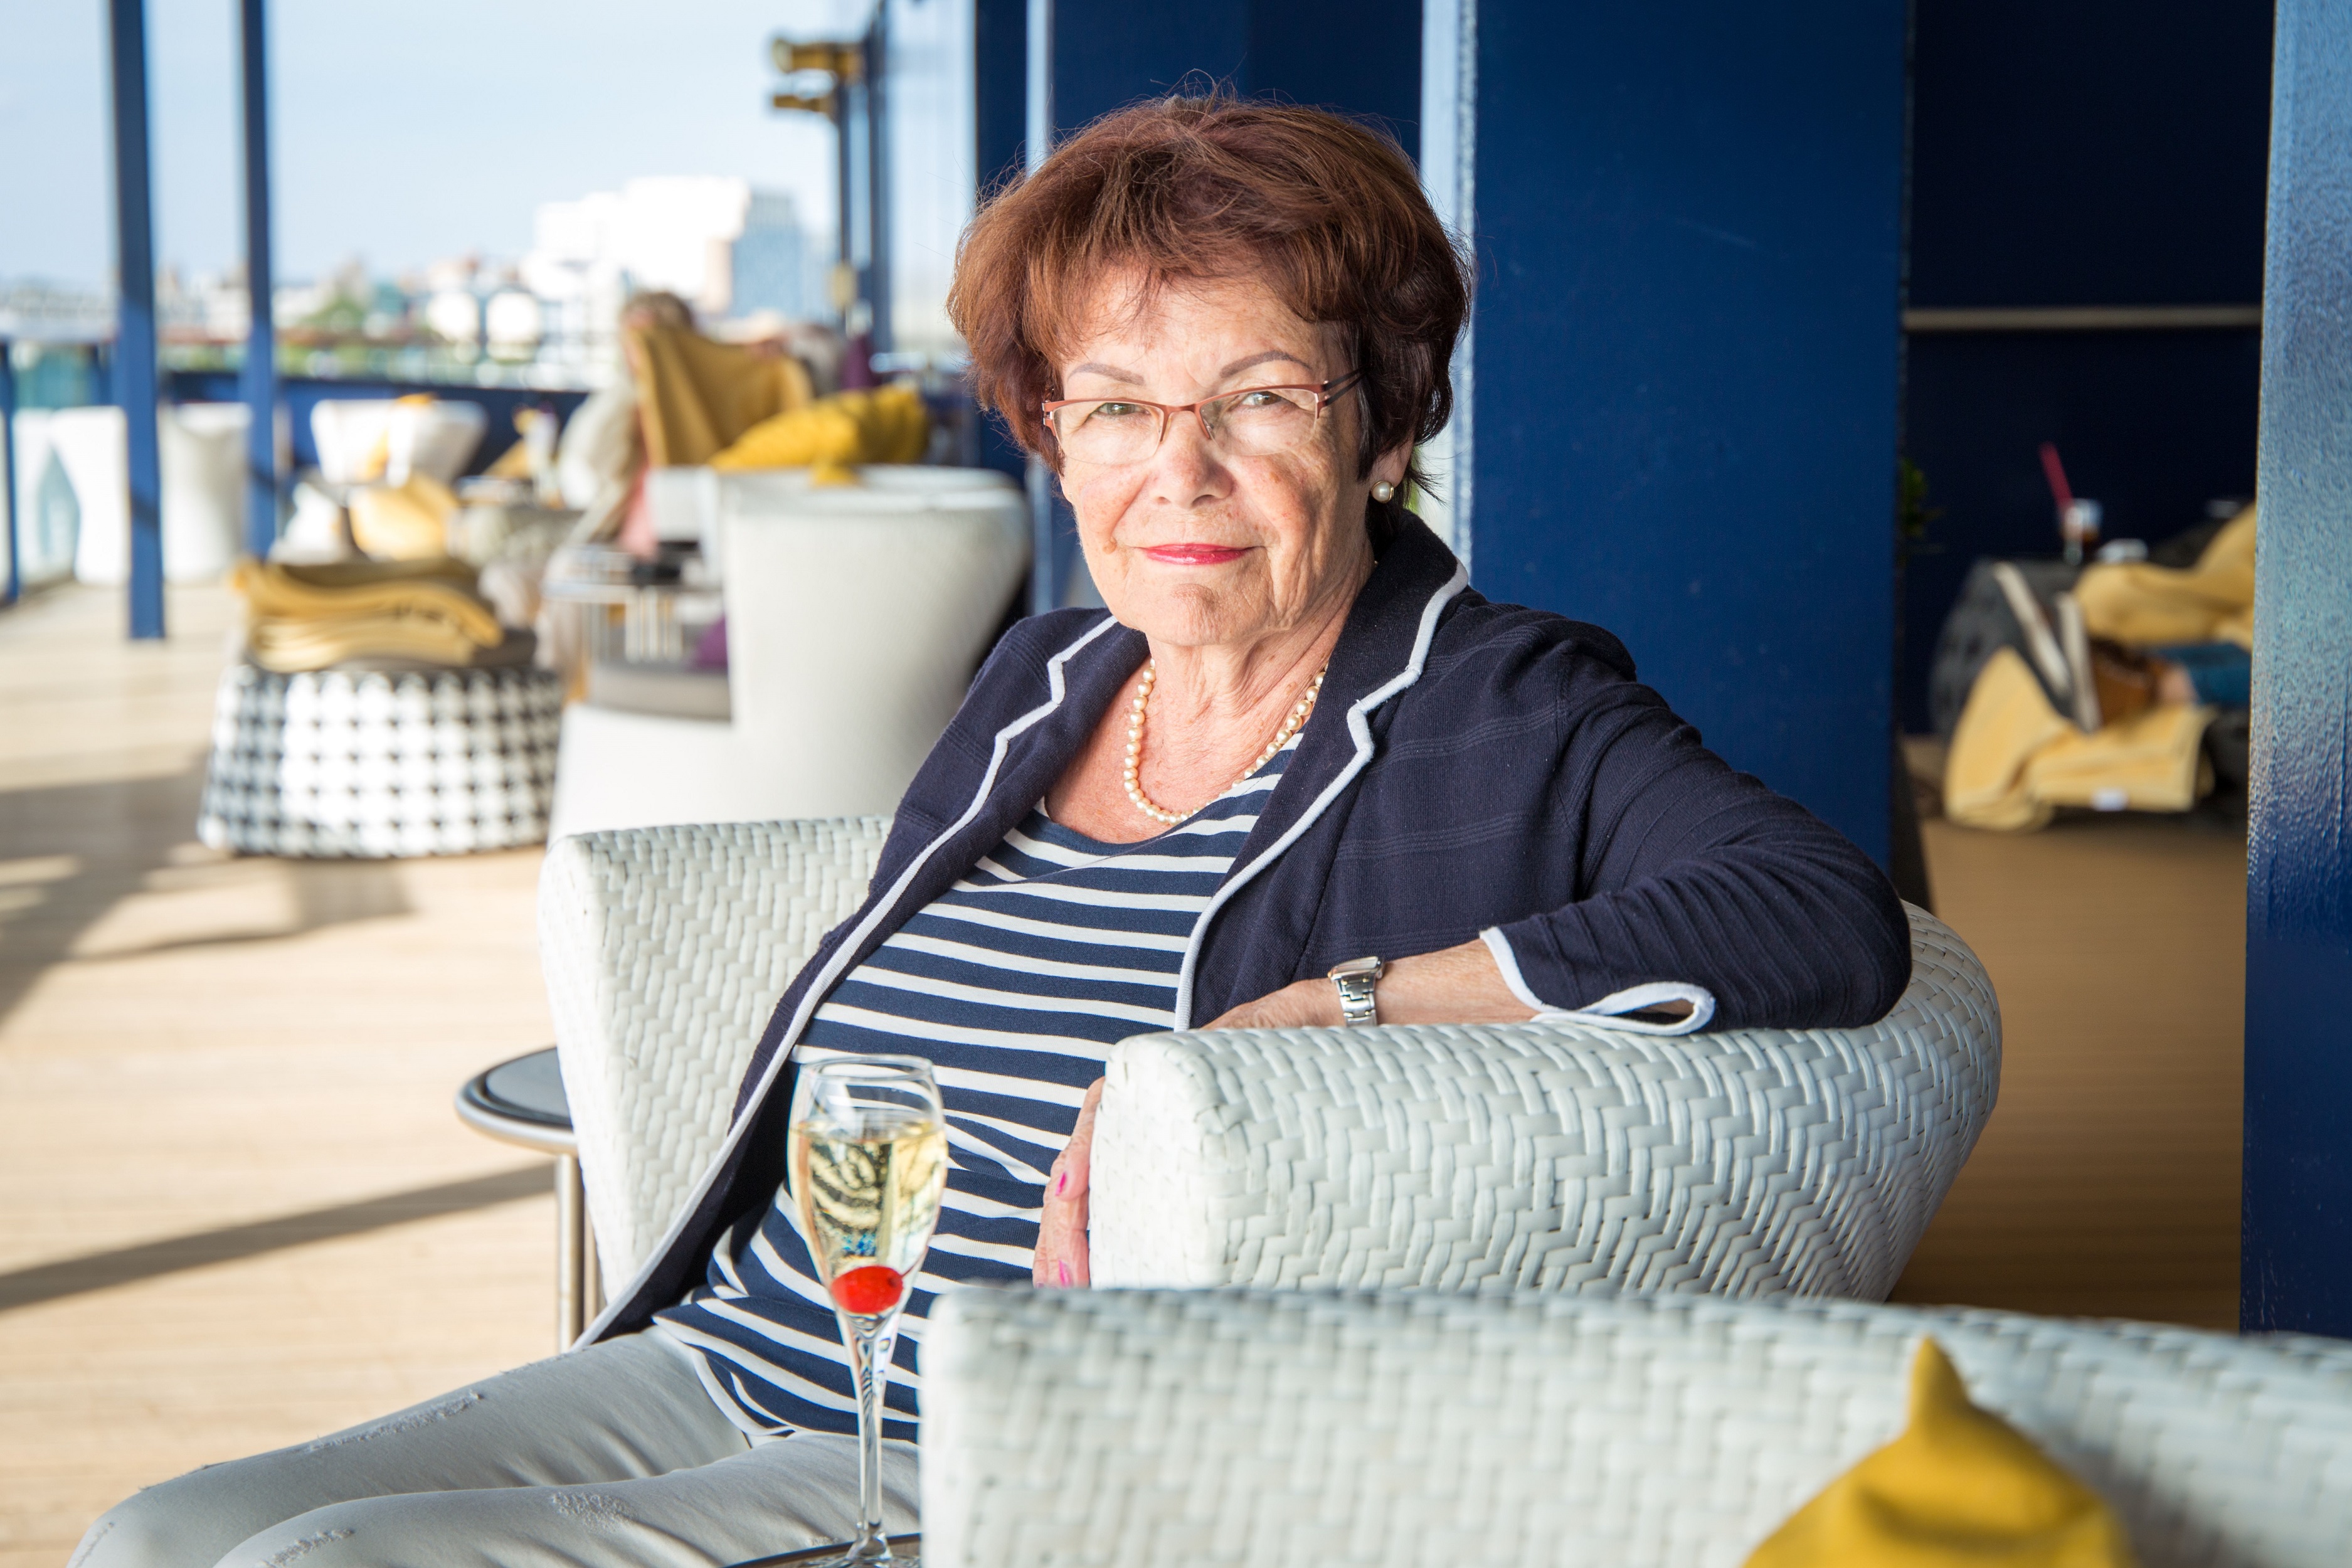 Entspannen am Seetag für Mein Schiff Fan Ingrid Malmström kein Pronlem